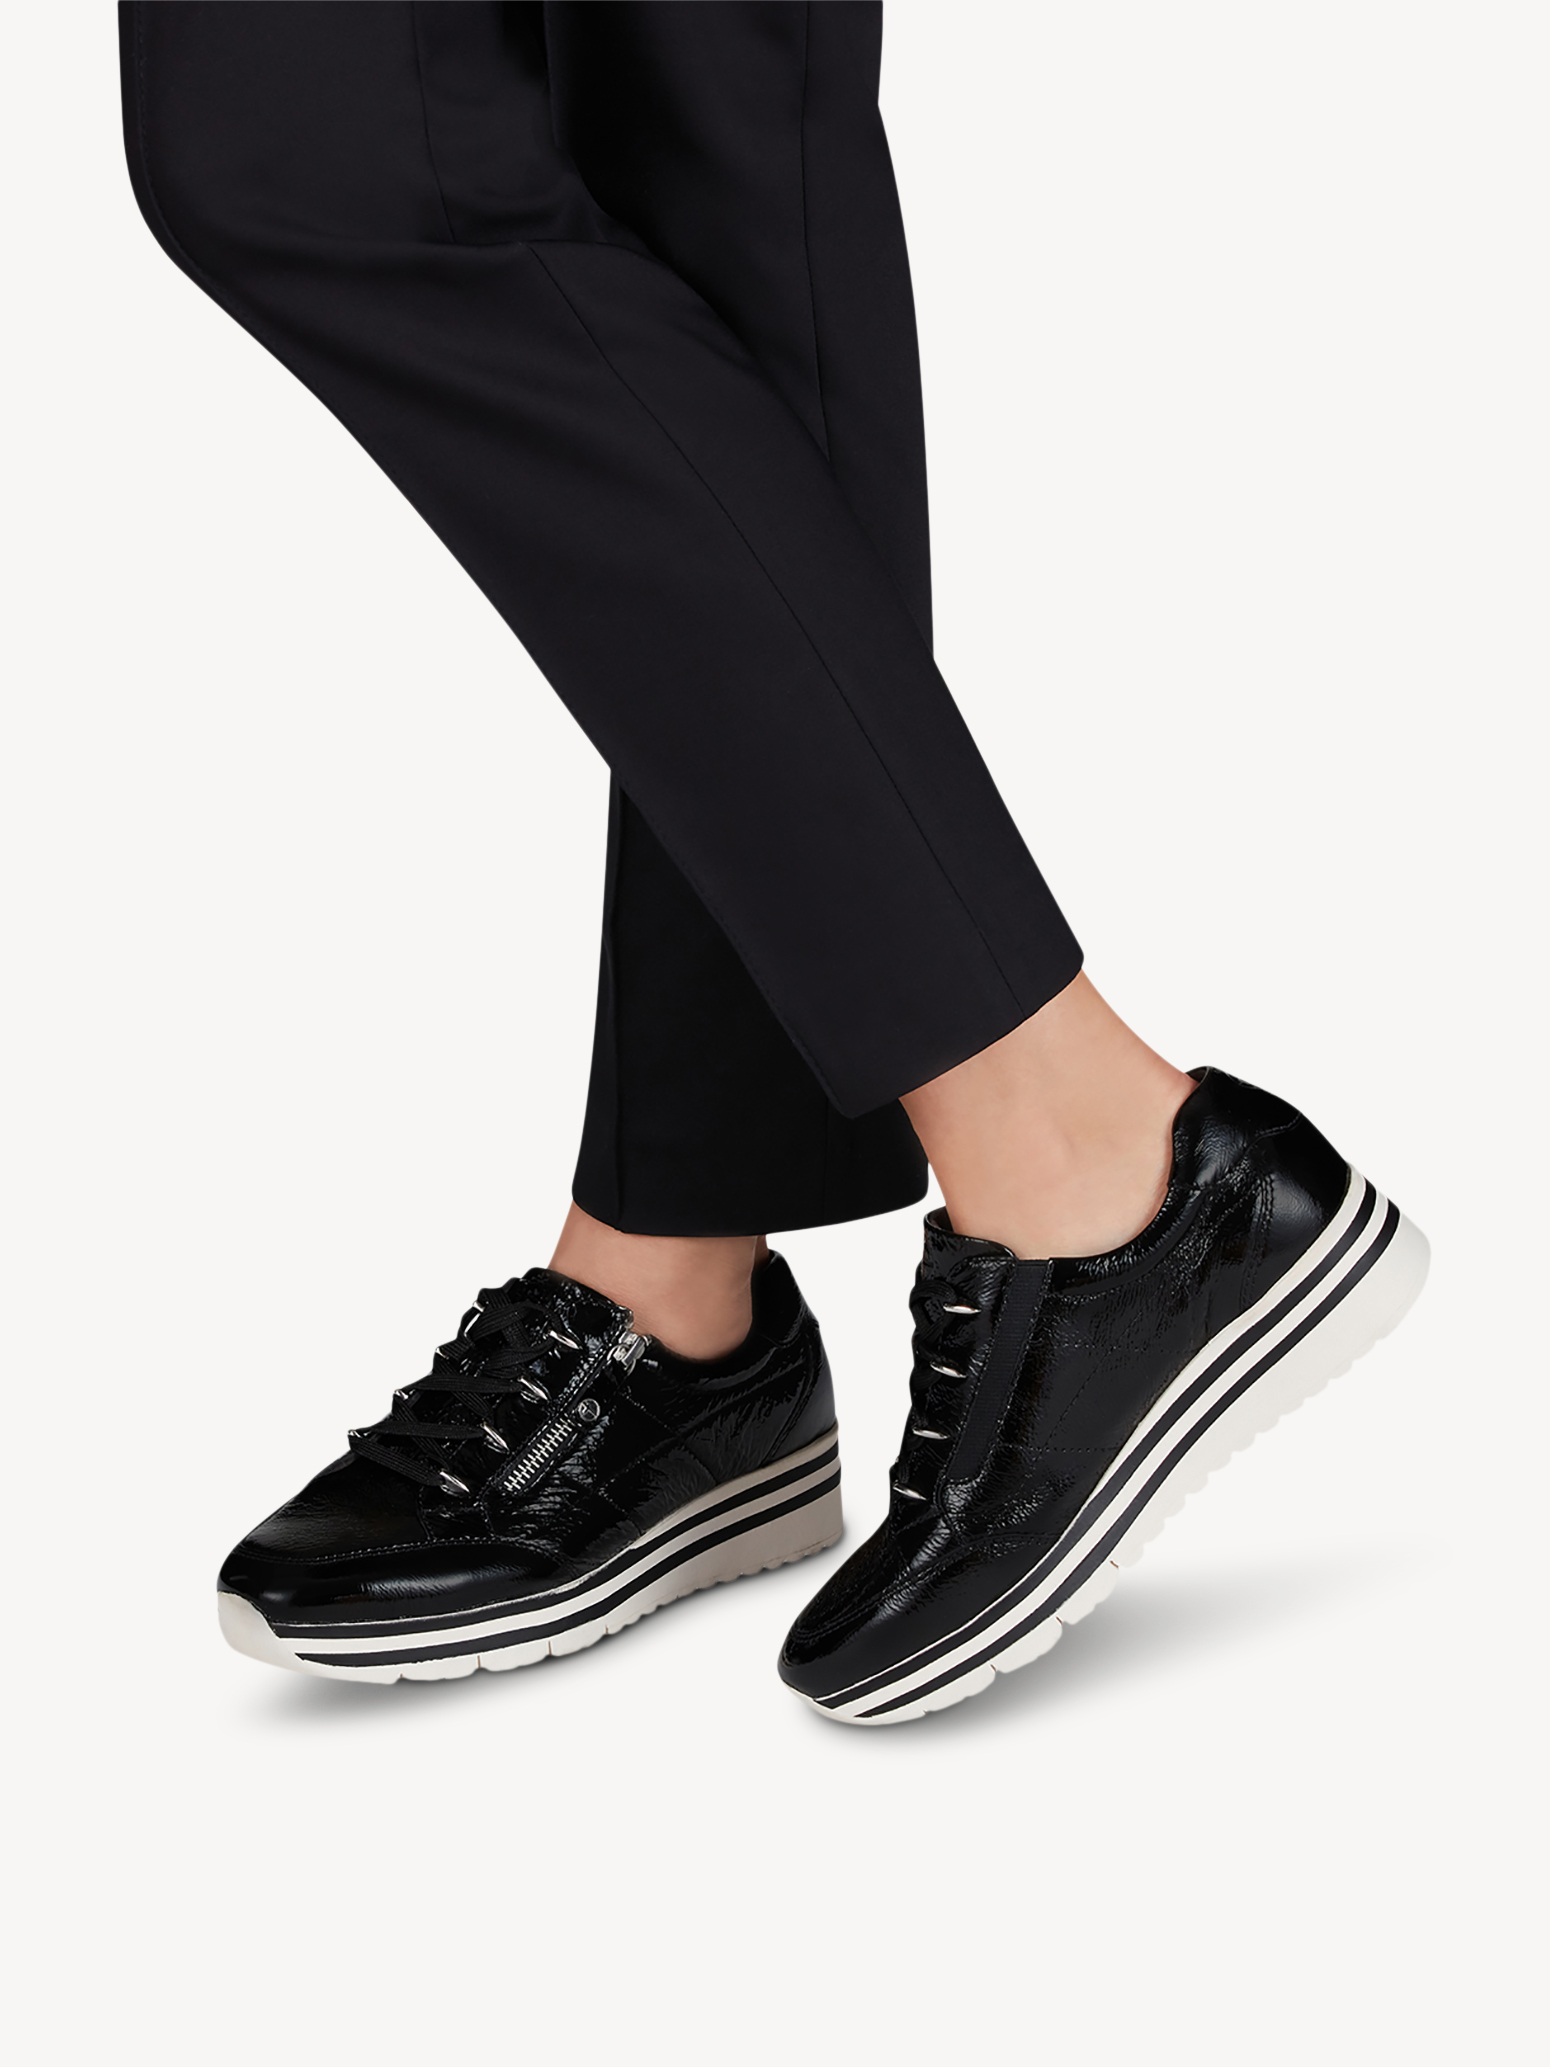 Ботинки на шнурках женские 5 AW20 (черный лаковый) - изображение №1